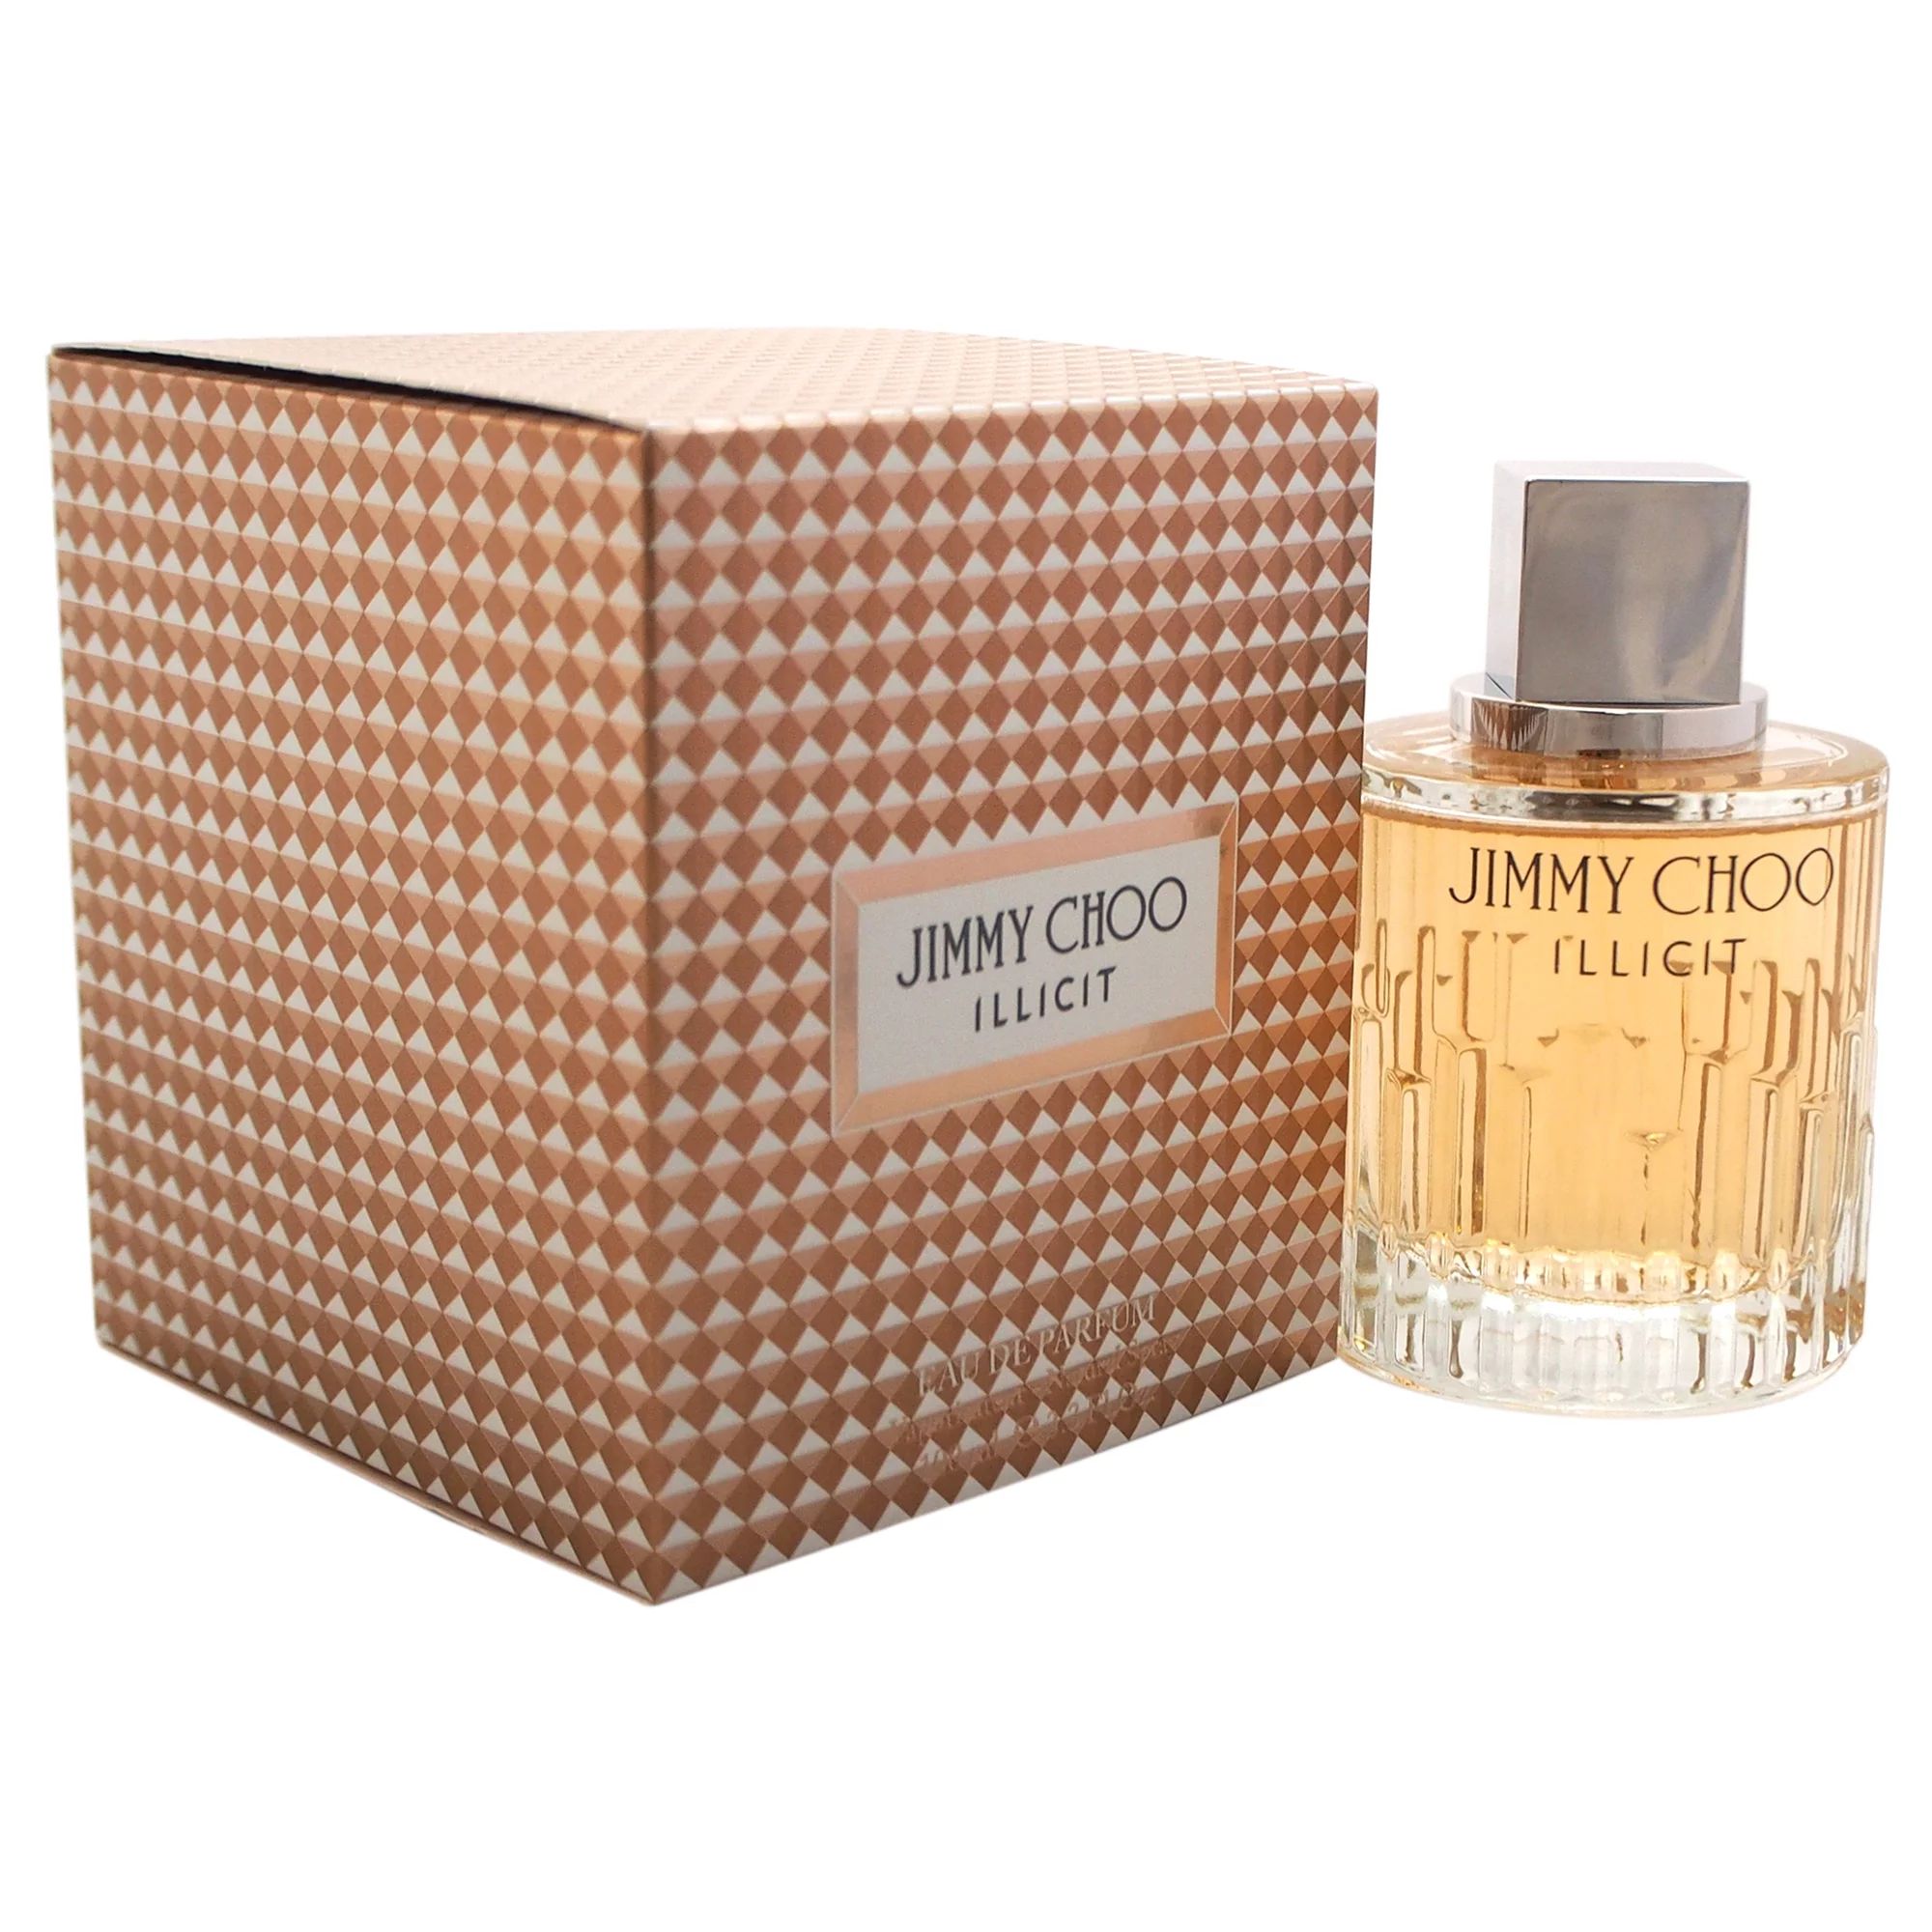 Jimmy Choo Illicit Eau de Parfum, Perfume For Women, 3.3 oz | Walmart (US)